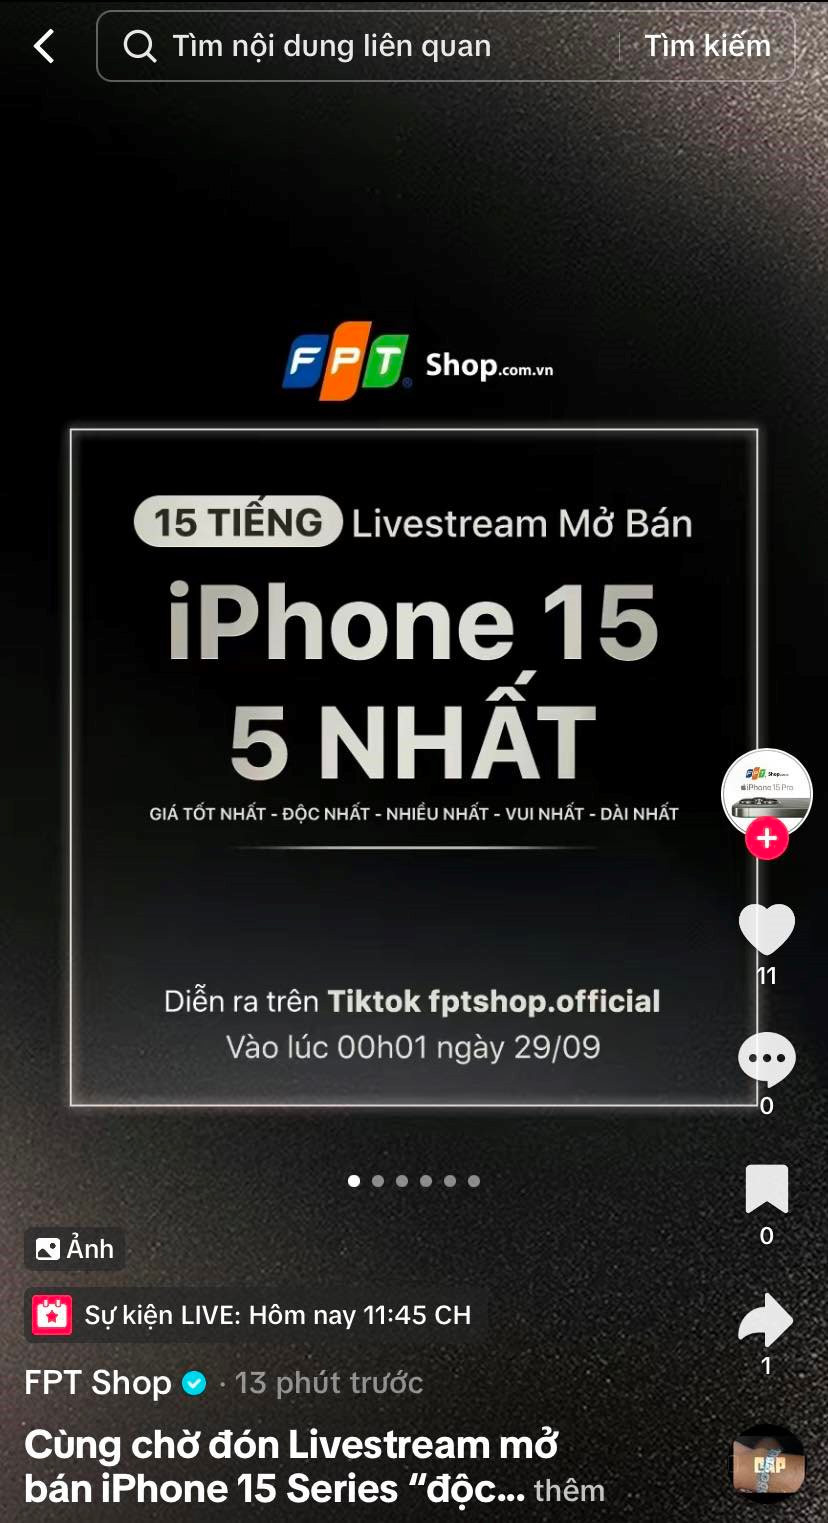 FPT Shop &quot;chơi lớn&quot;: Tuyên bố livestream mở bán online iPhone 15 trên TikTok Shop, liên tục 15 tiếng - Ảnh 2.